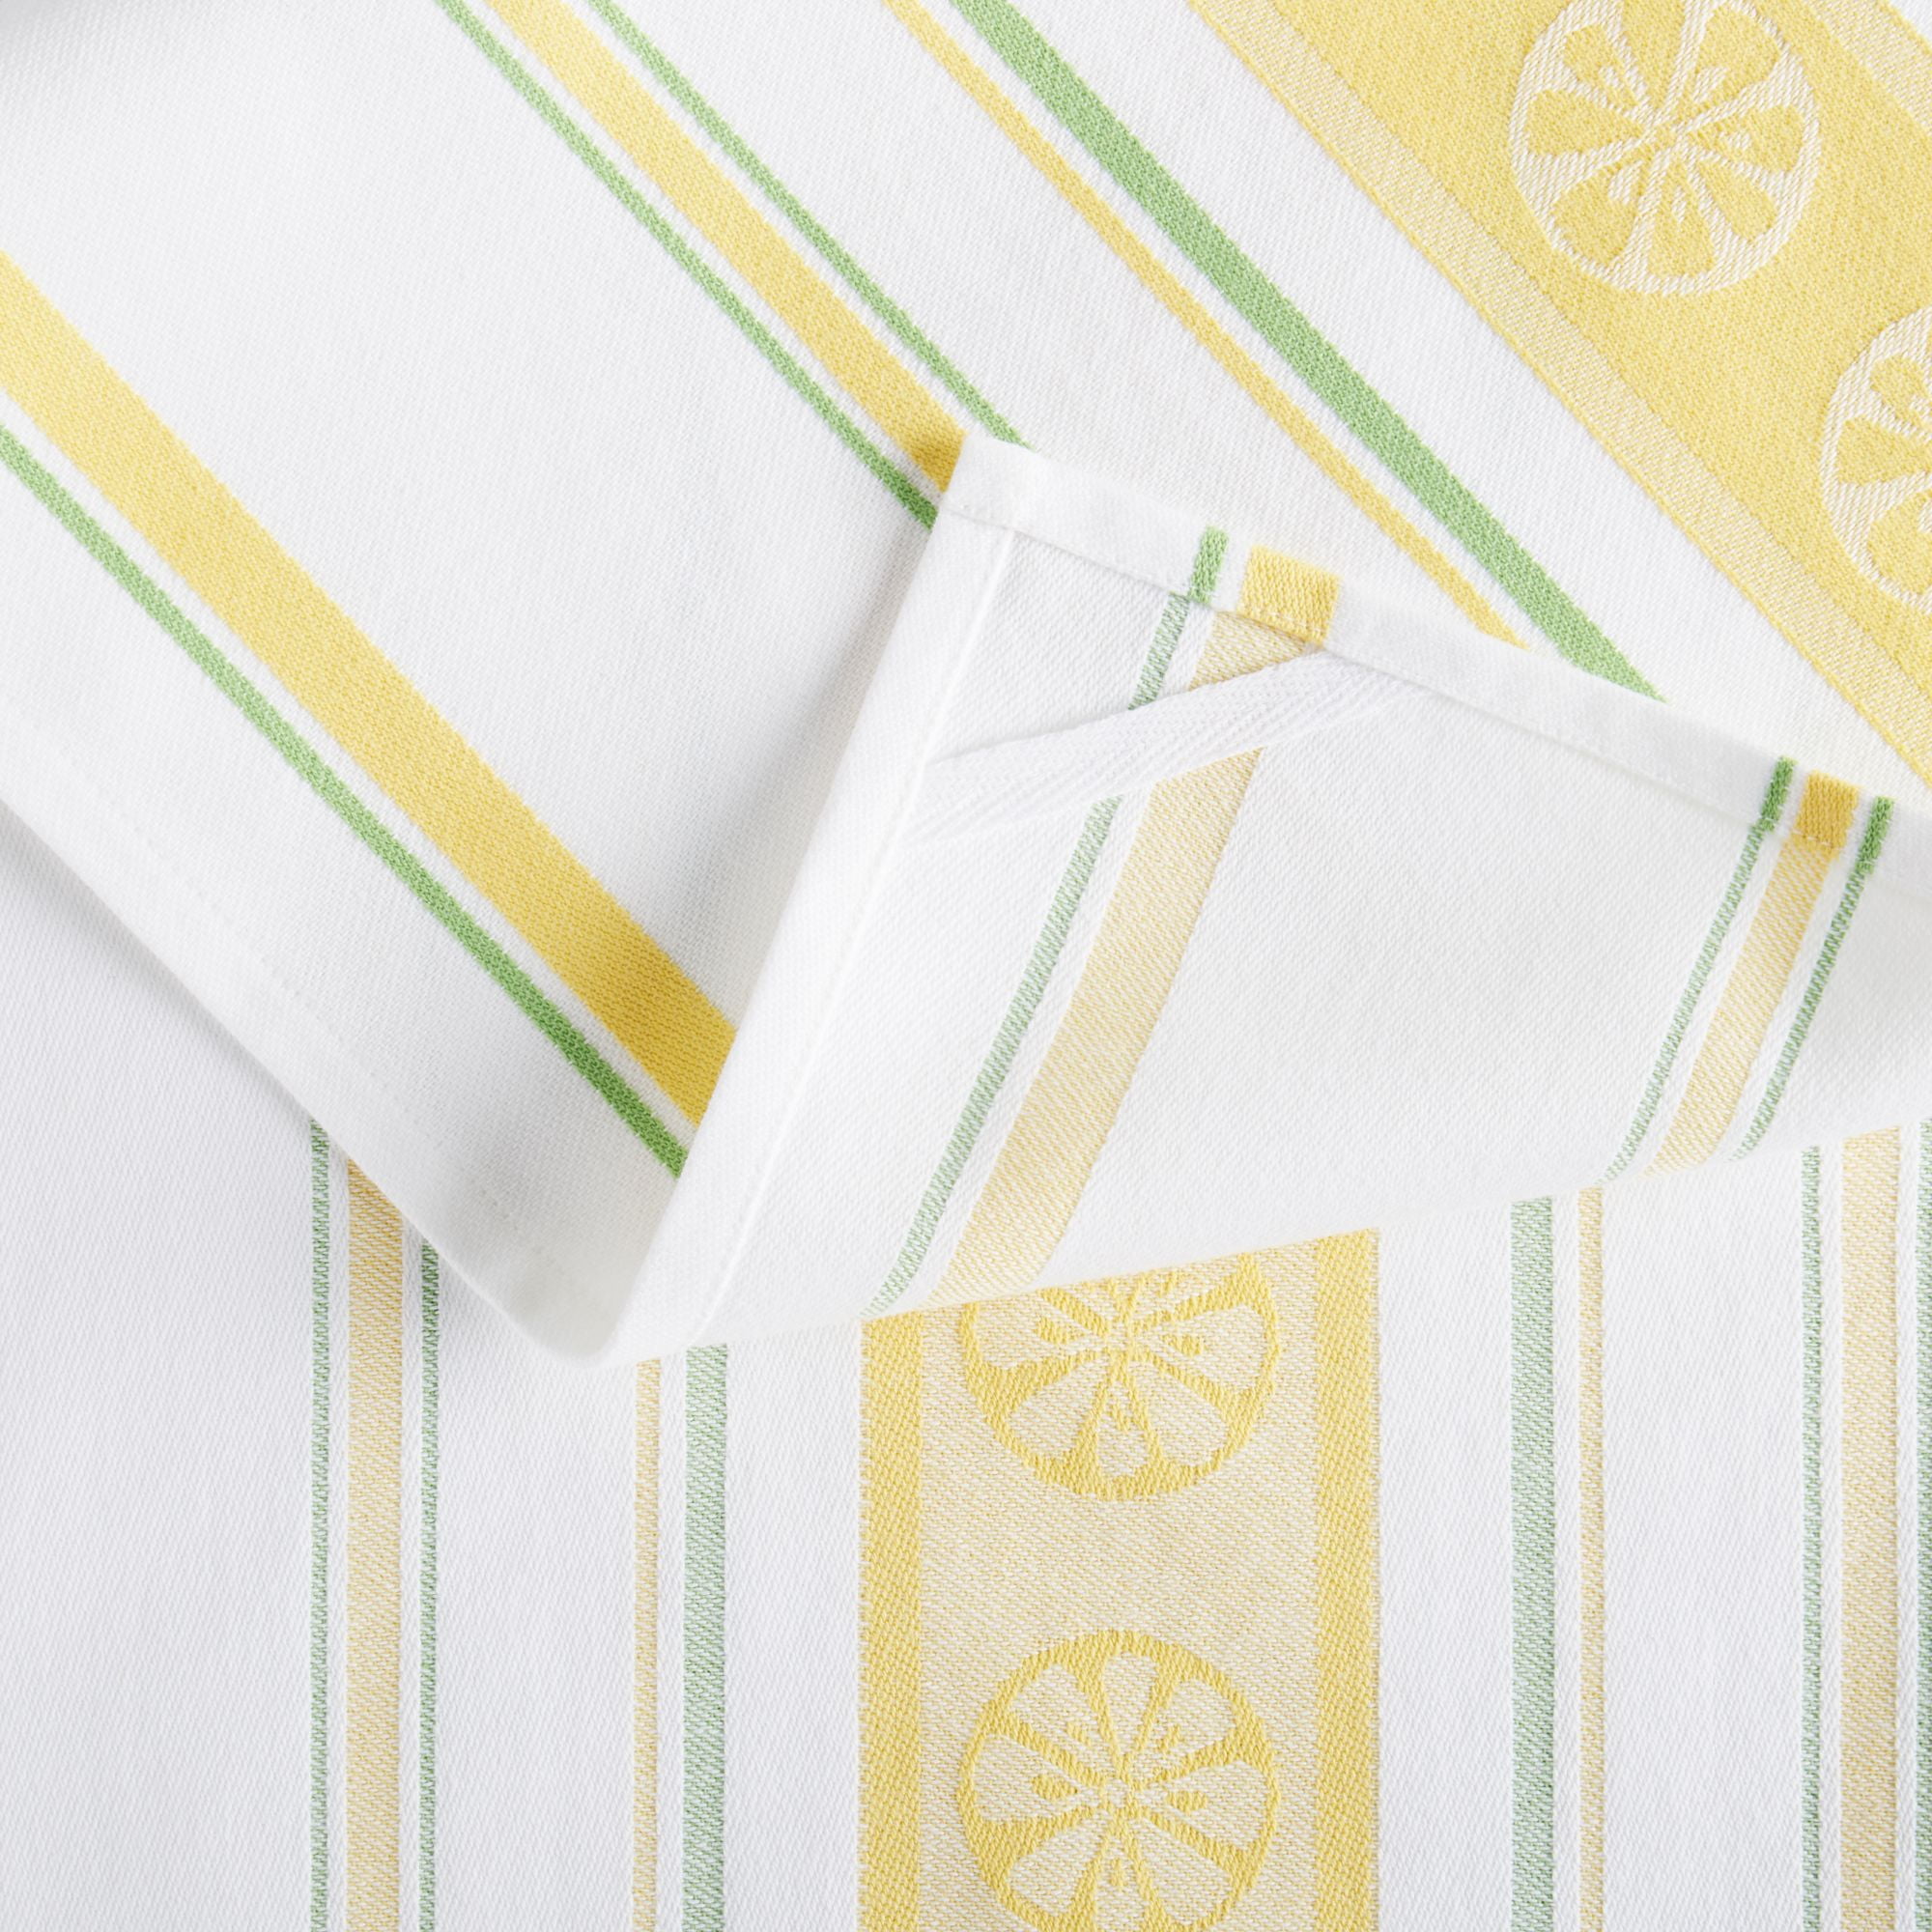 Martha Stewart Lots of Lemons Kitchen Towel Cotton Kitchen Towel Set,  Multicolor, 3 Piece 